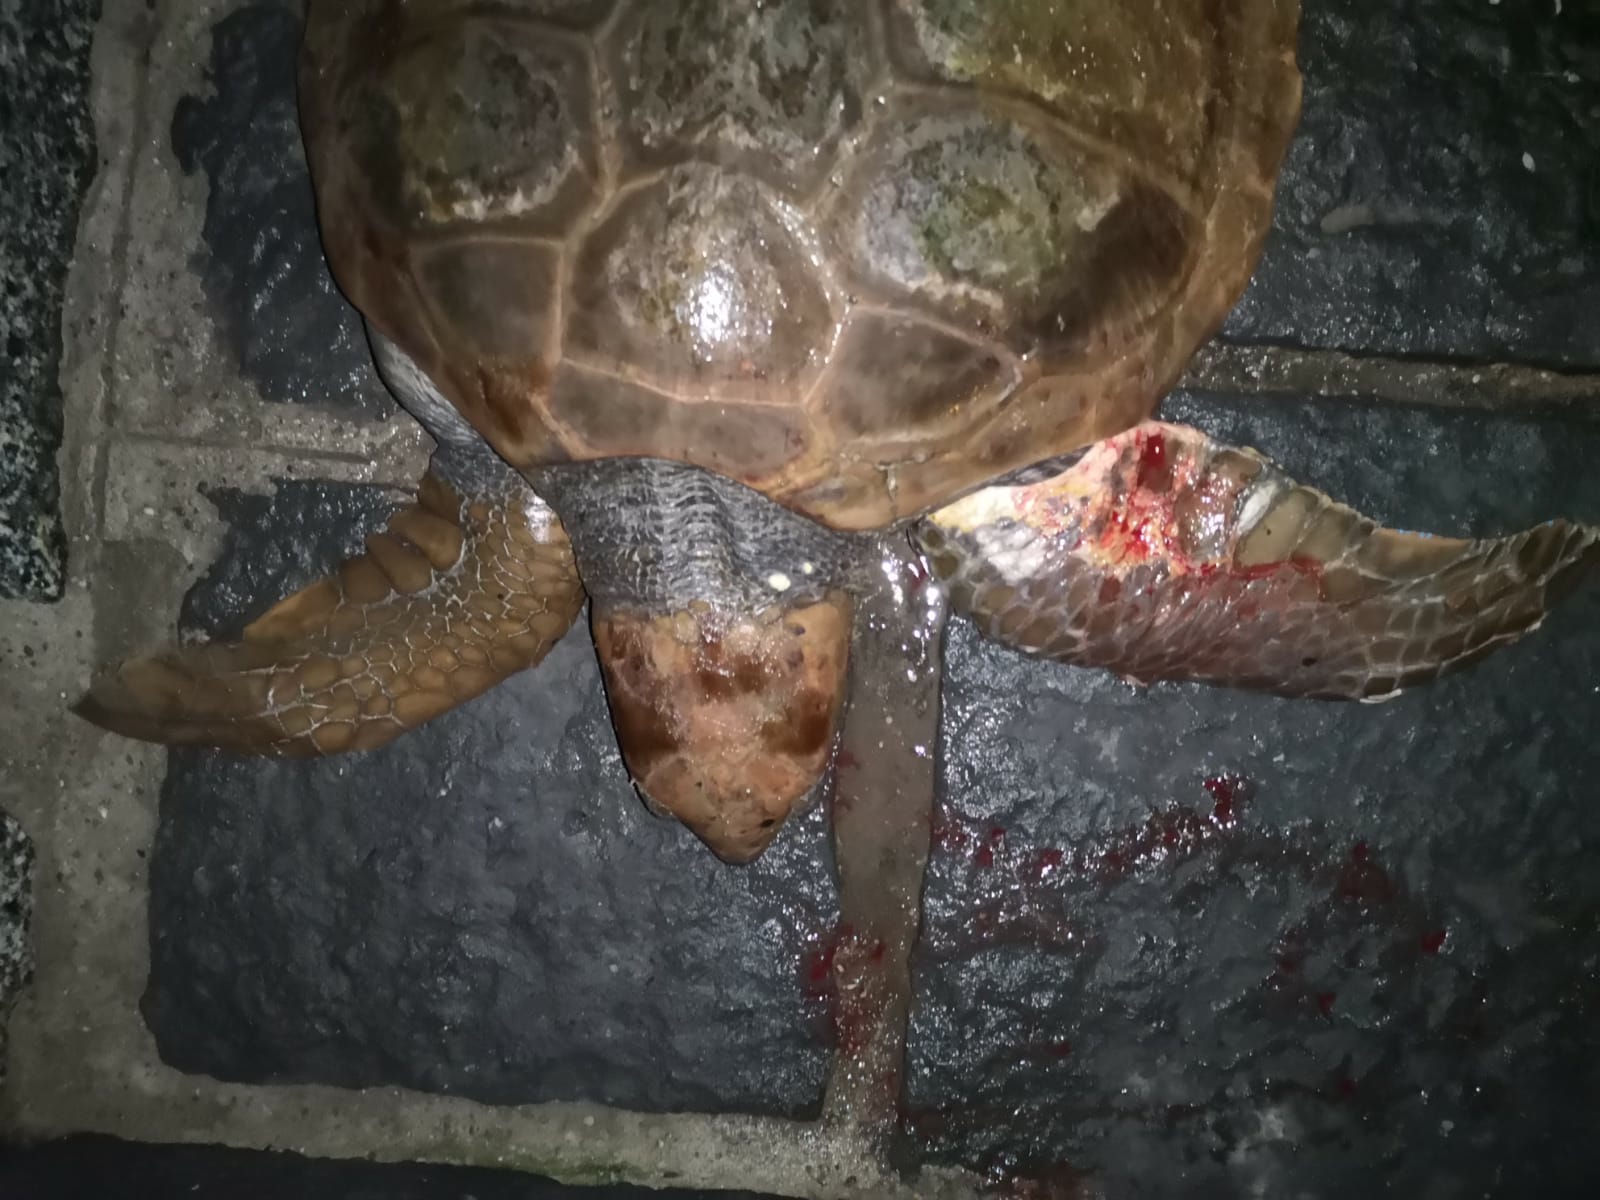 Una tartaruga ferita è stata messa in salvo al porto di Scilla